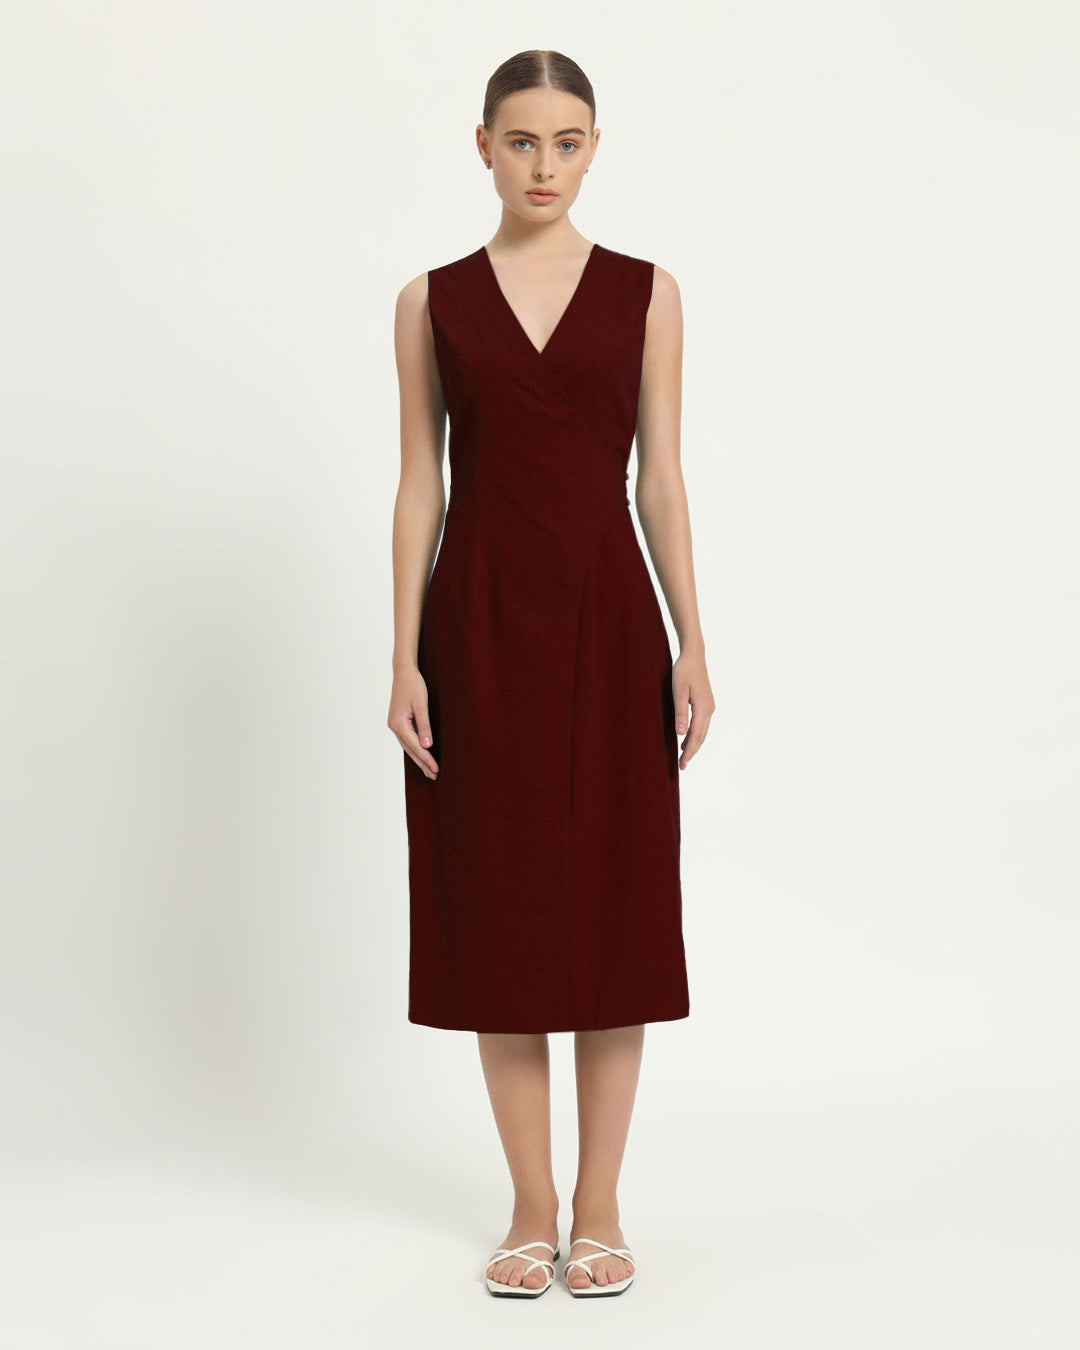 The Aurich Rouge Cotton Dress